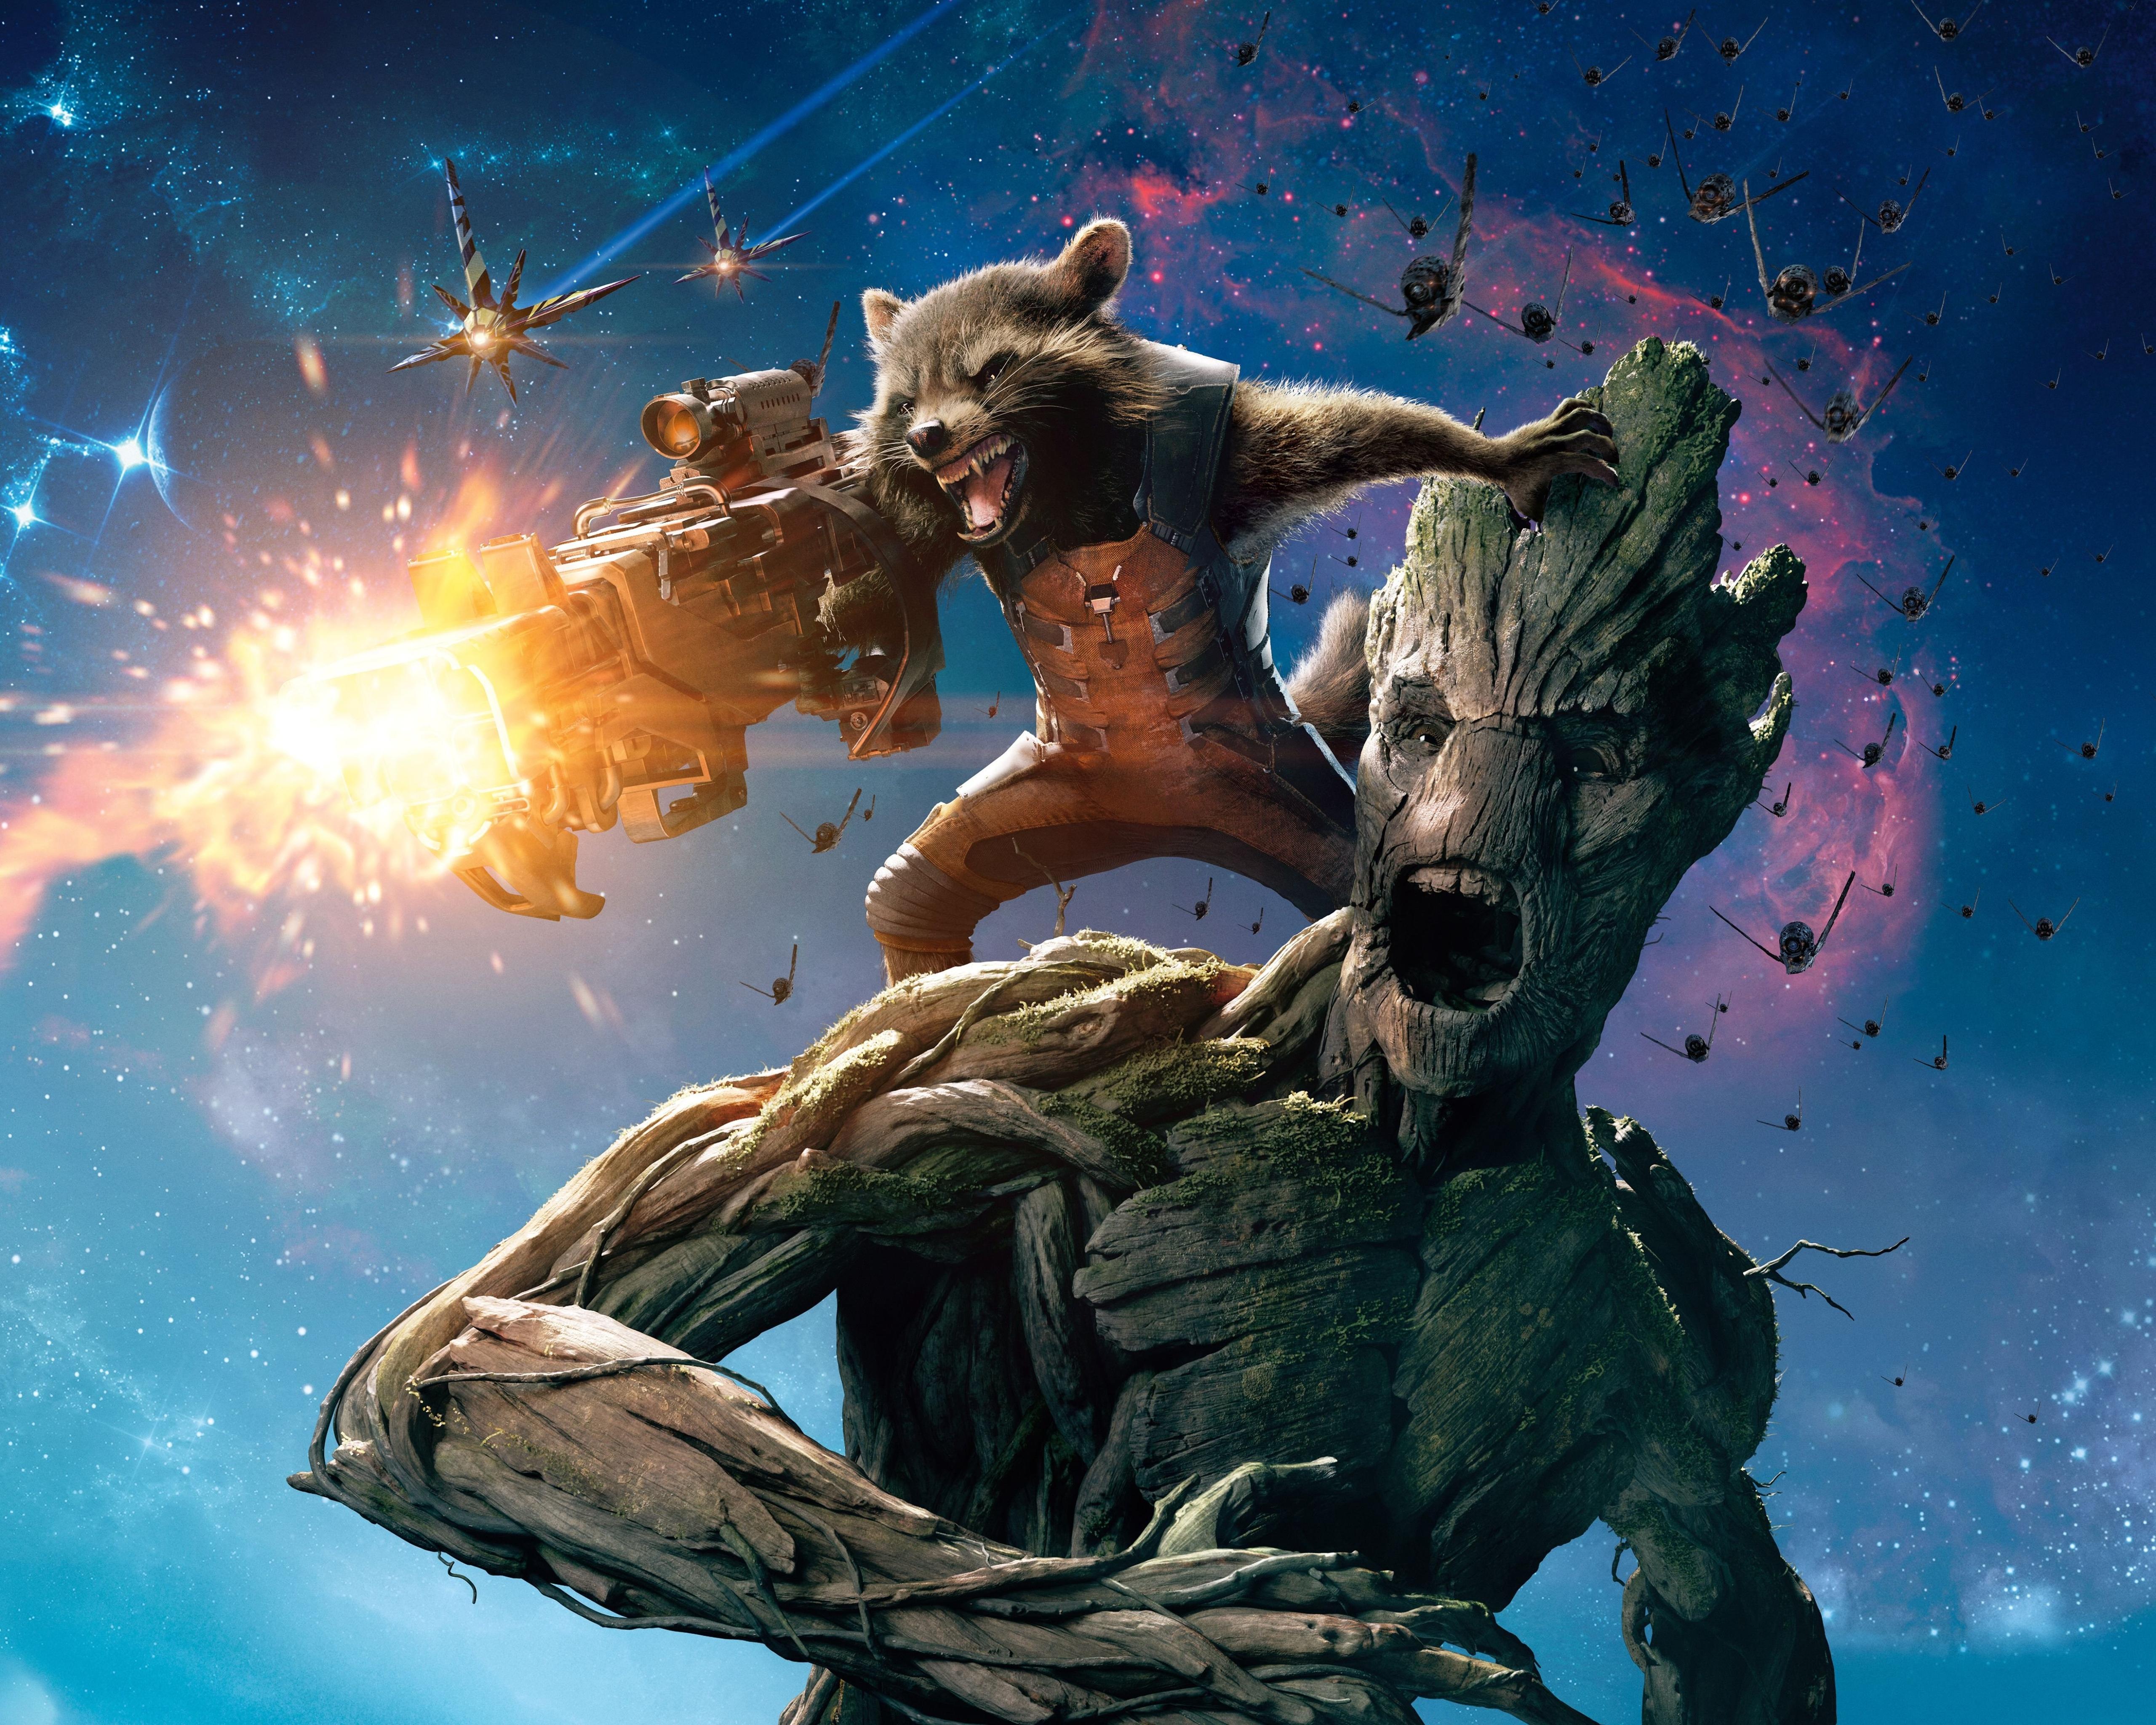 Guardians of the Galaxy, Groot, Rocket Raccoon 5K UHD 5:4 5120x4096